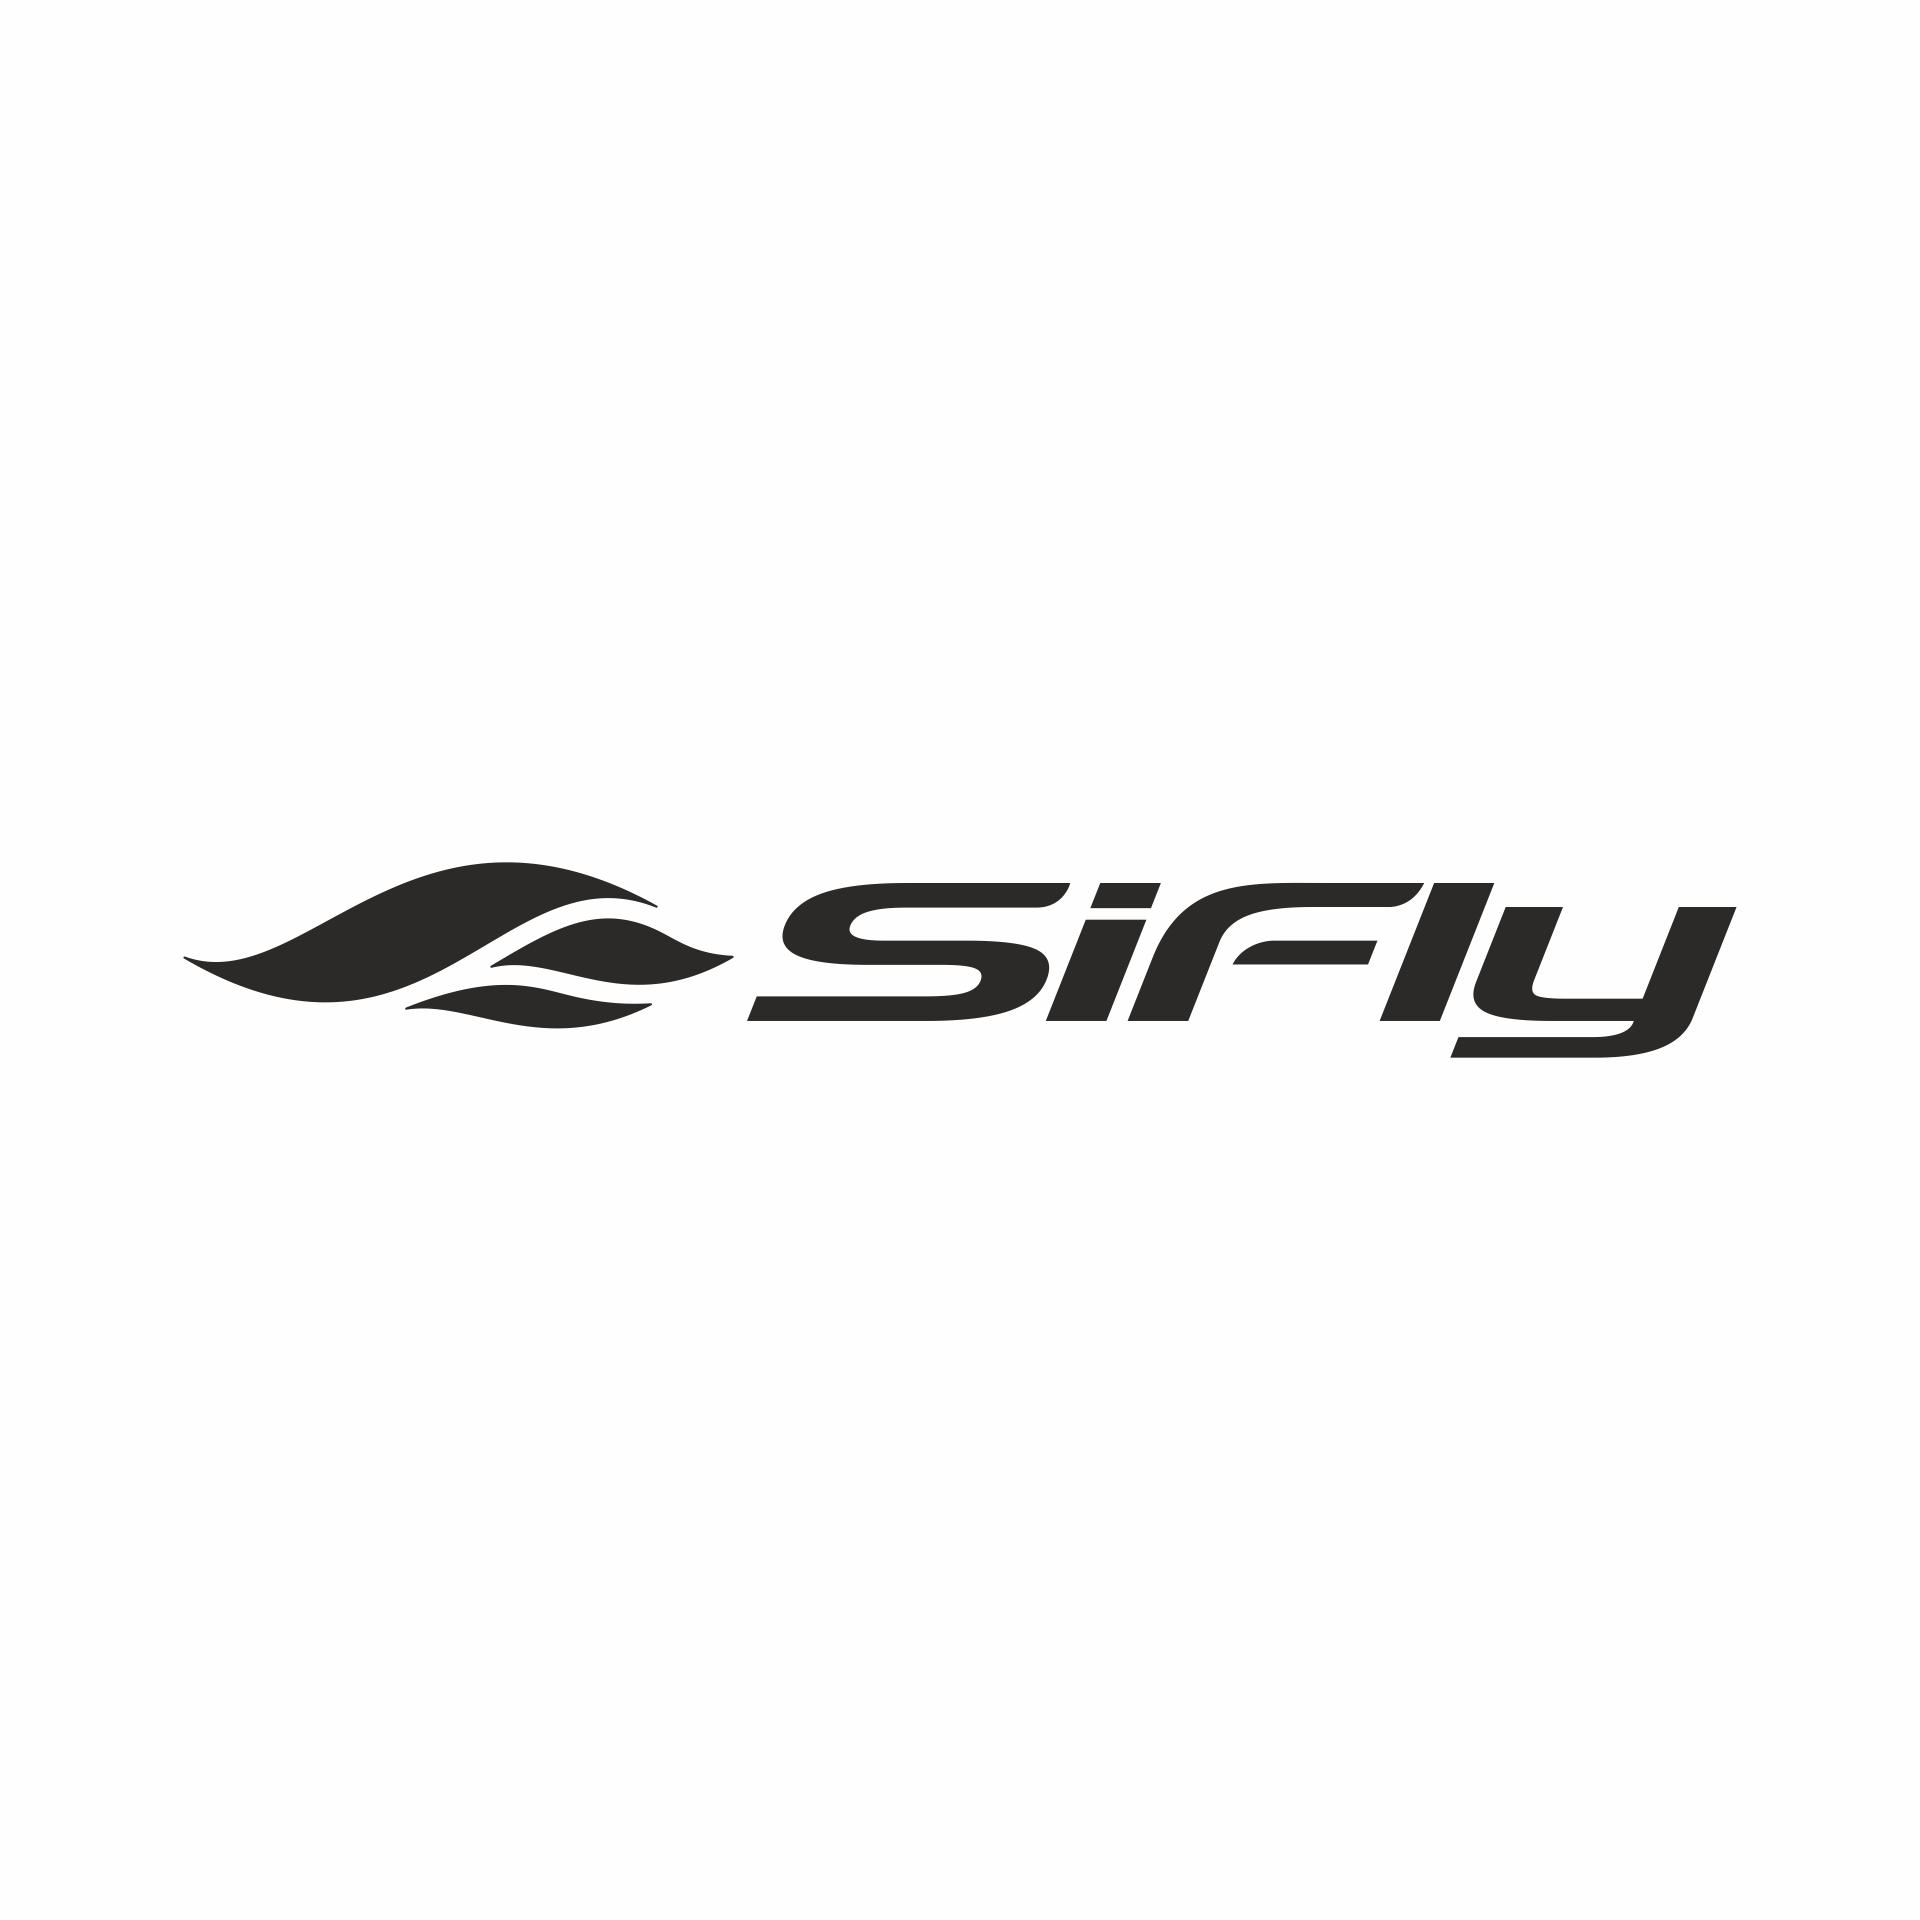 SiFly logo white